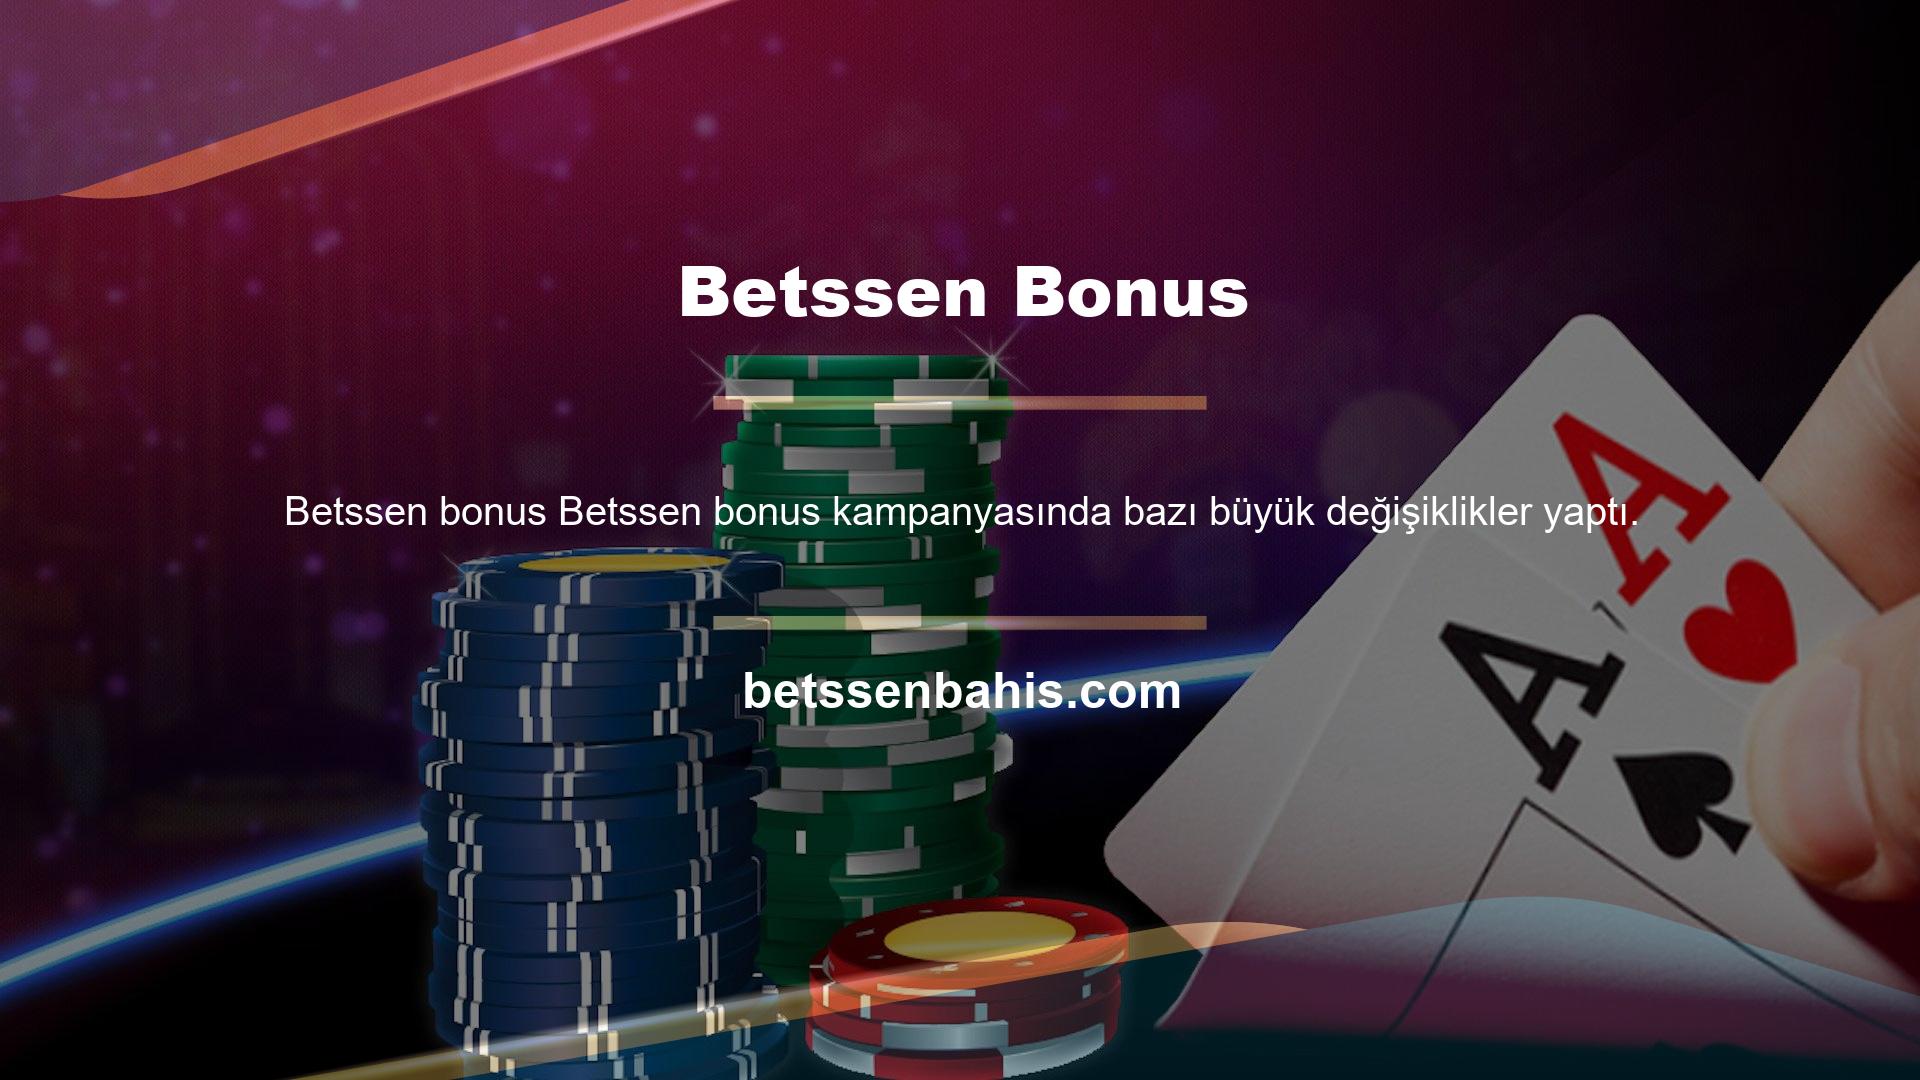 Betssen Canlı Casino'nun popüler bonuslarının çoğu artık ücretsiz! Referans bonuslarında bahis zorunluluğu yoktur